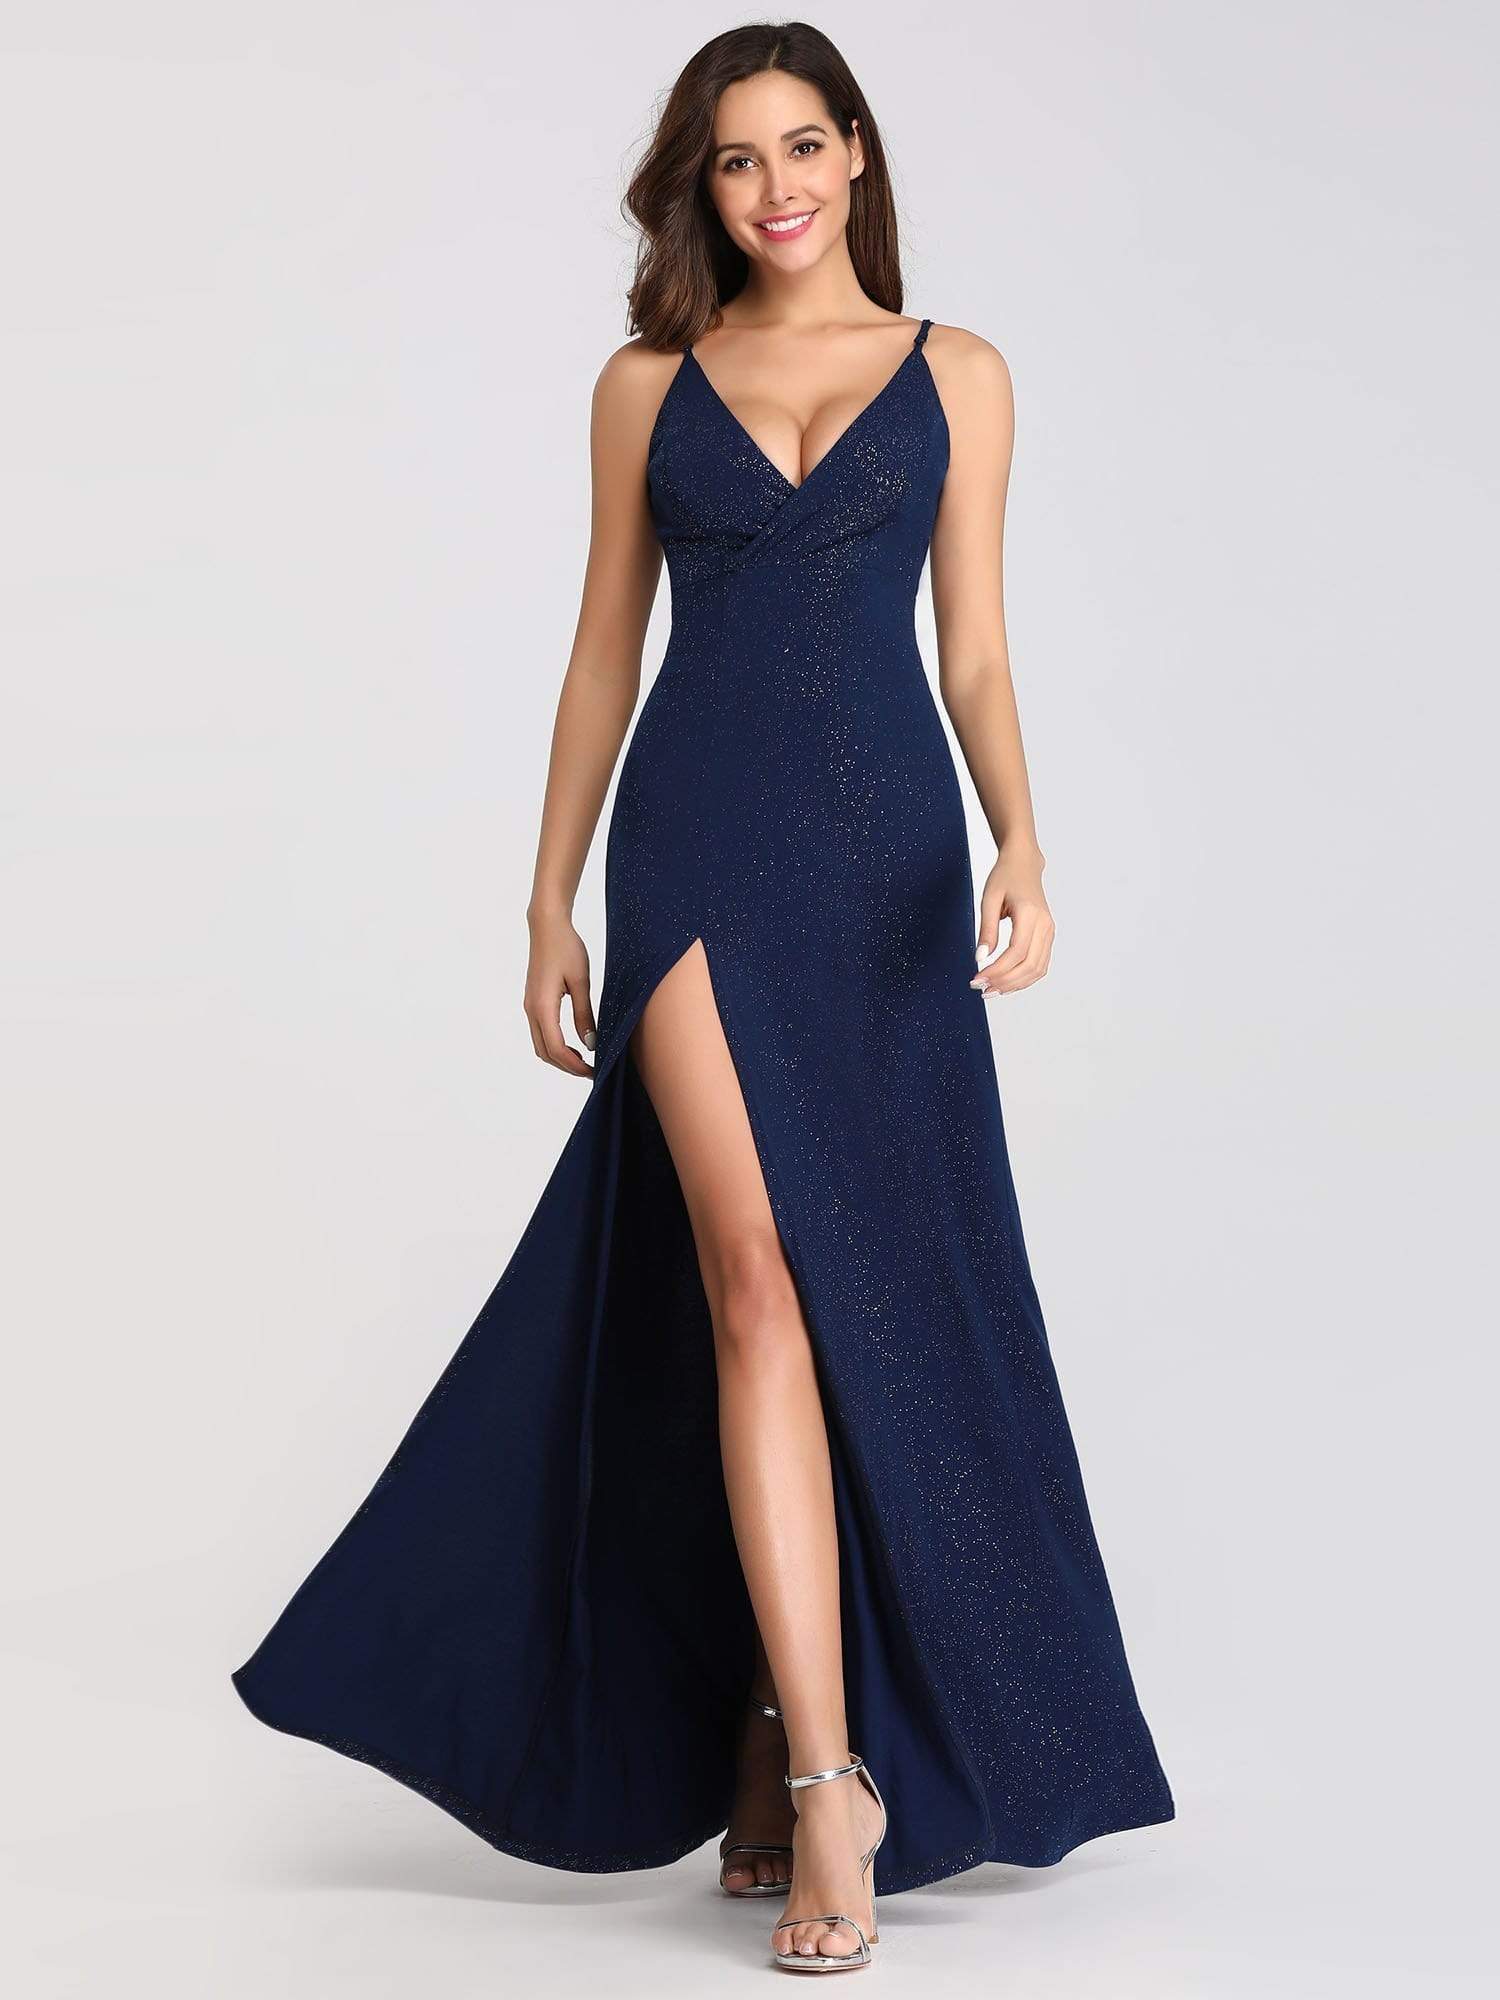 Вечернее платье синее длинное с разрезом